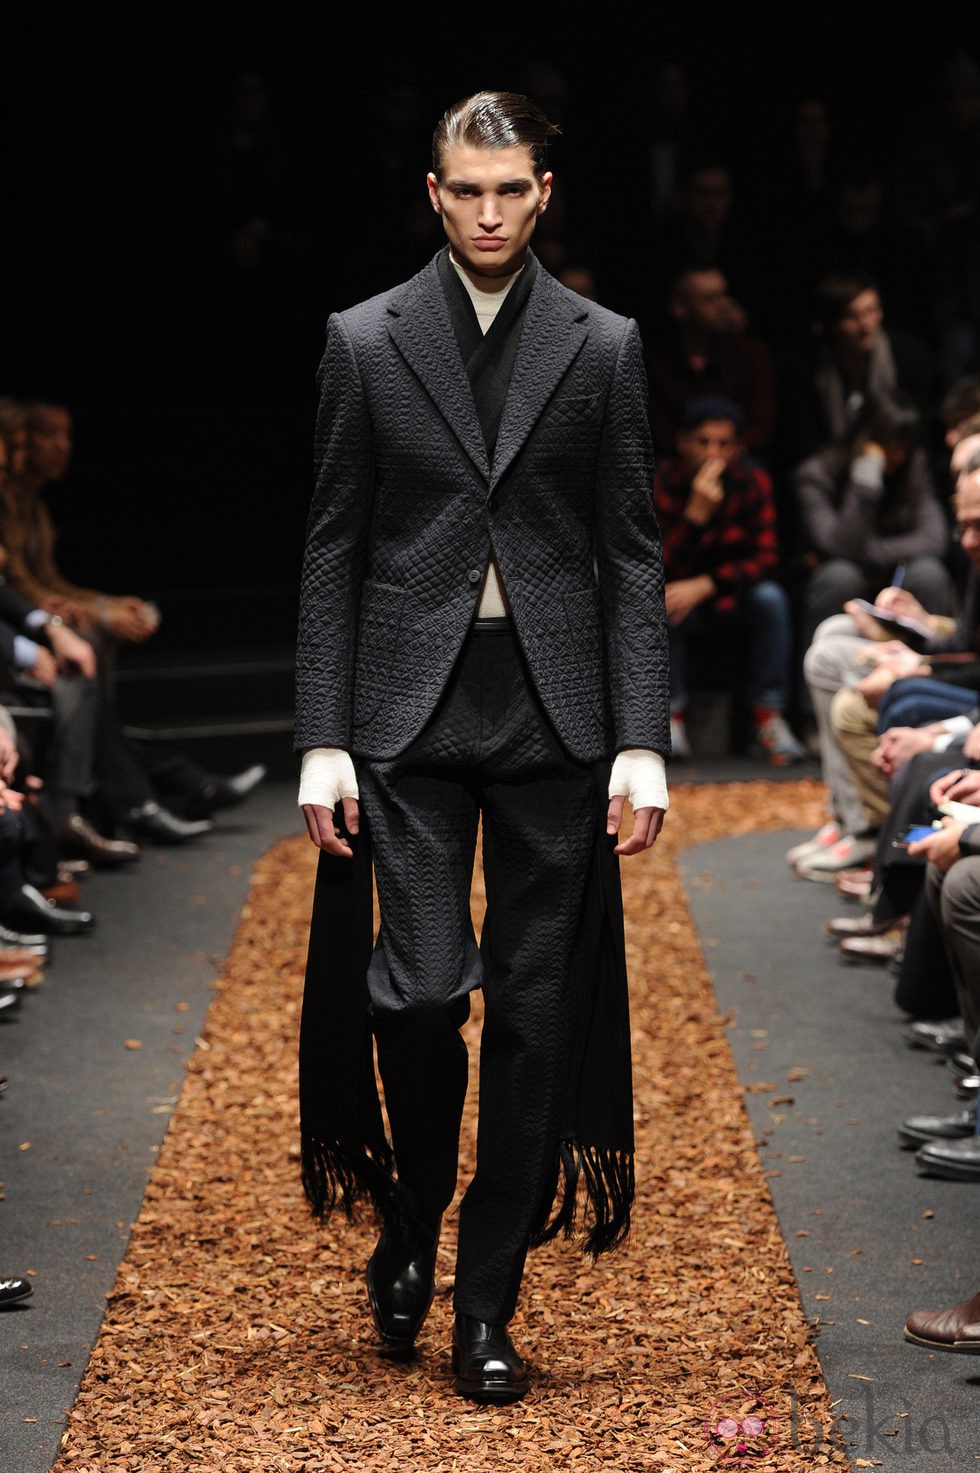 Traje de la colección otoño/invierno 2013/2014 de Z Zegna en la Semana de la Moda Masculina de Milán